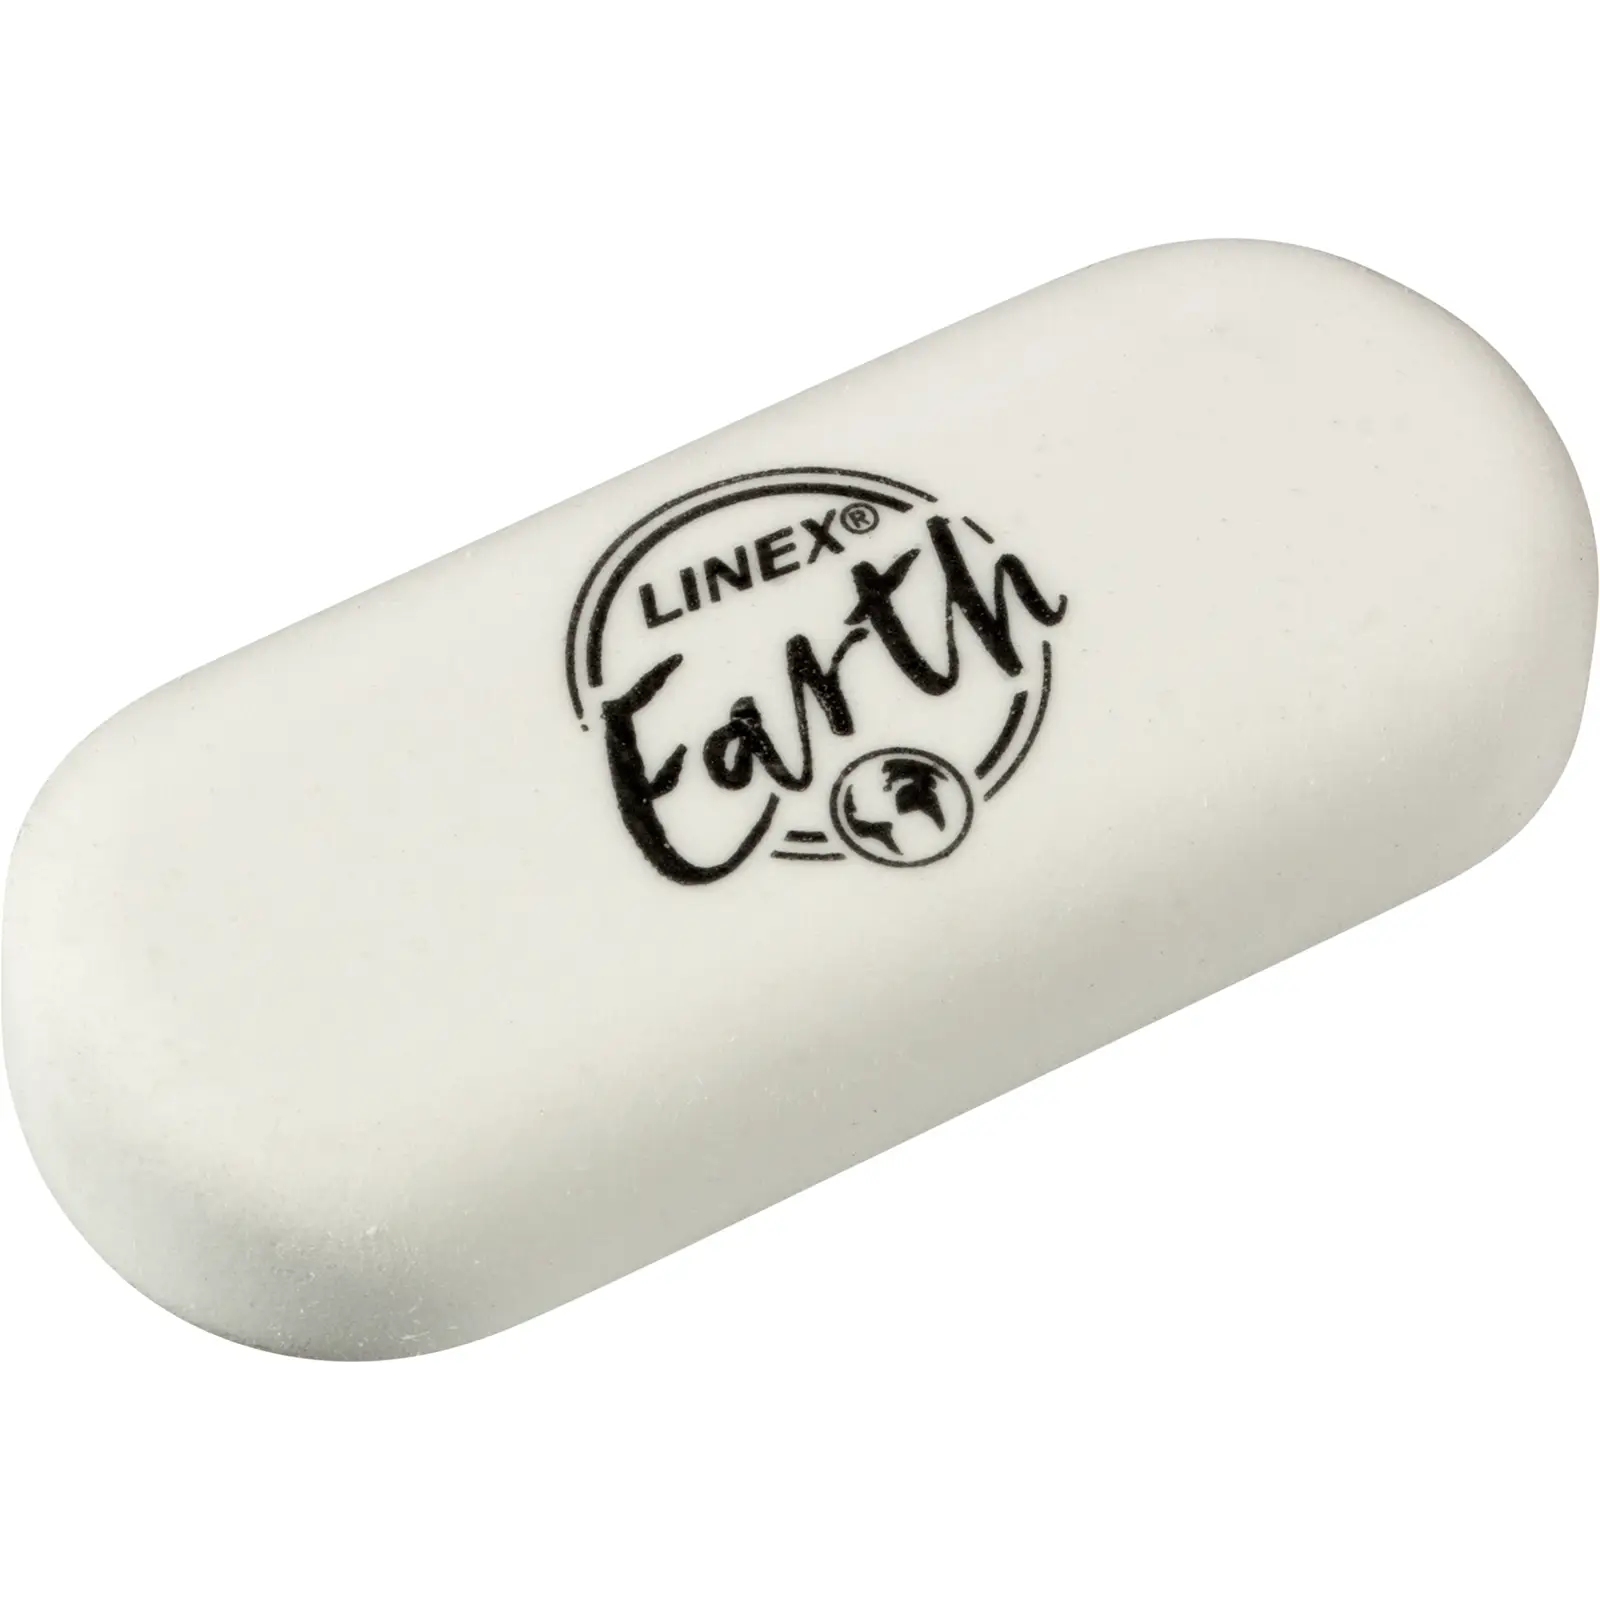 Linex Electric Eraser